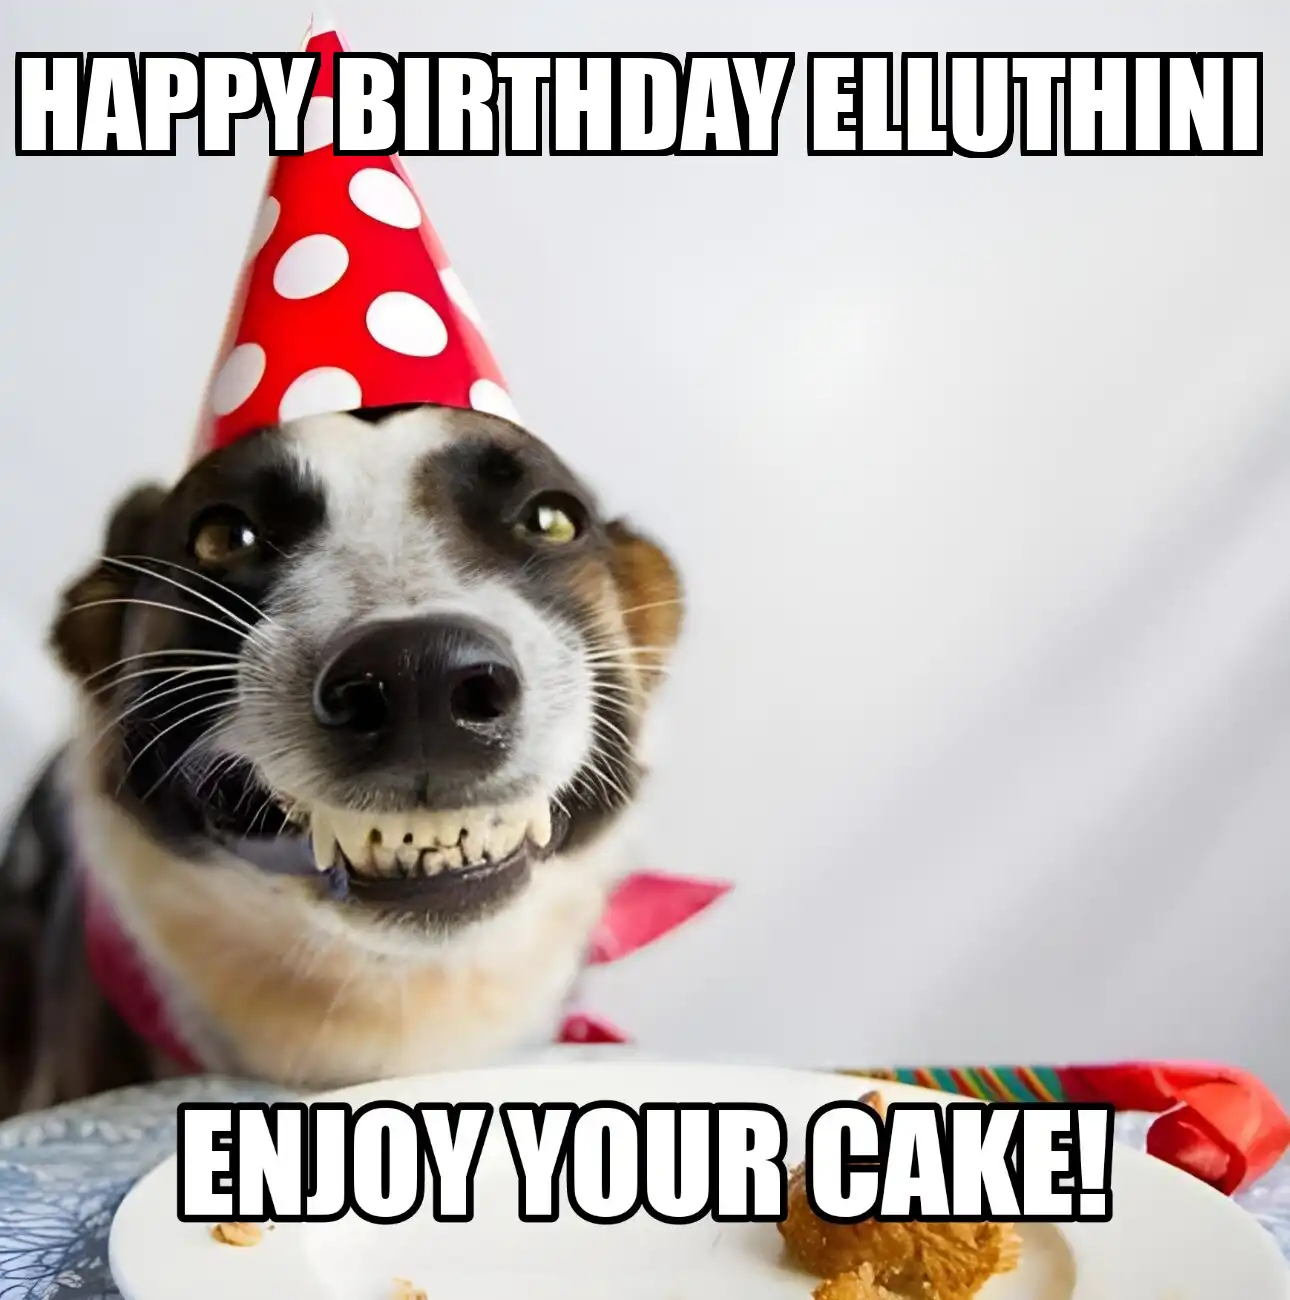 Happy Birthday Elluthini Enjoy Your Cake Dog Meme